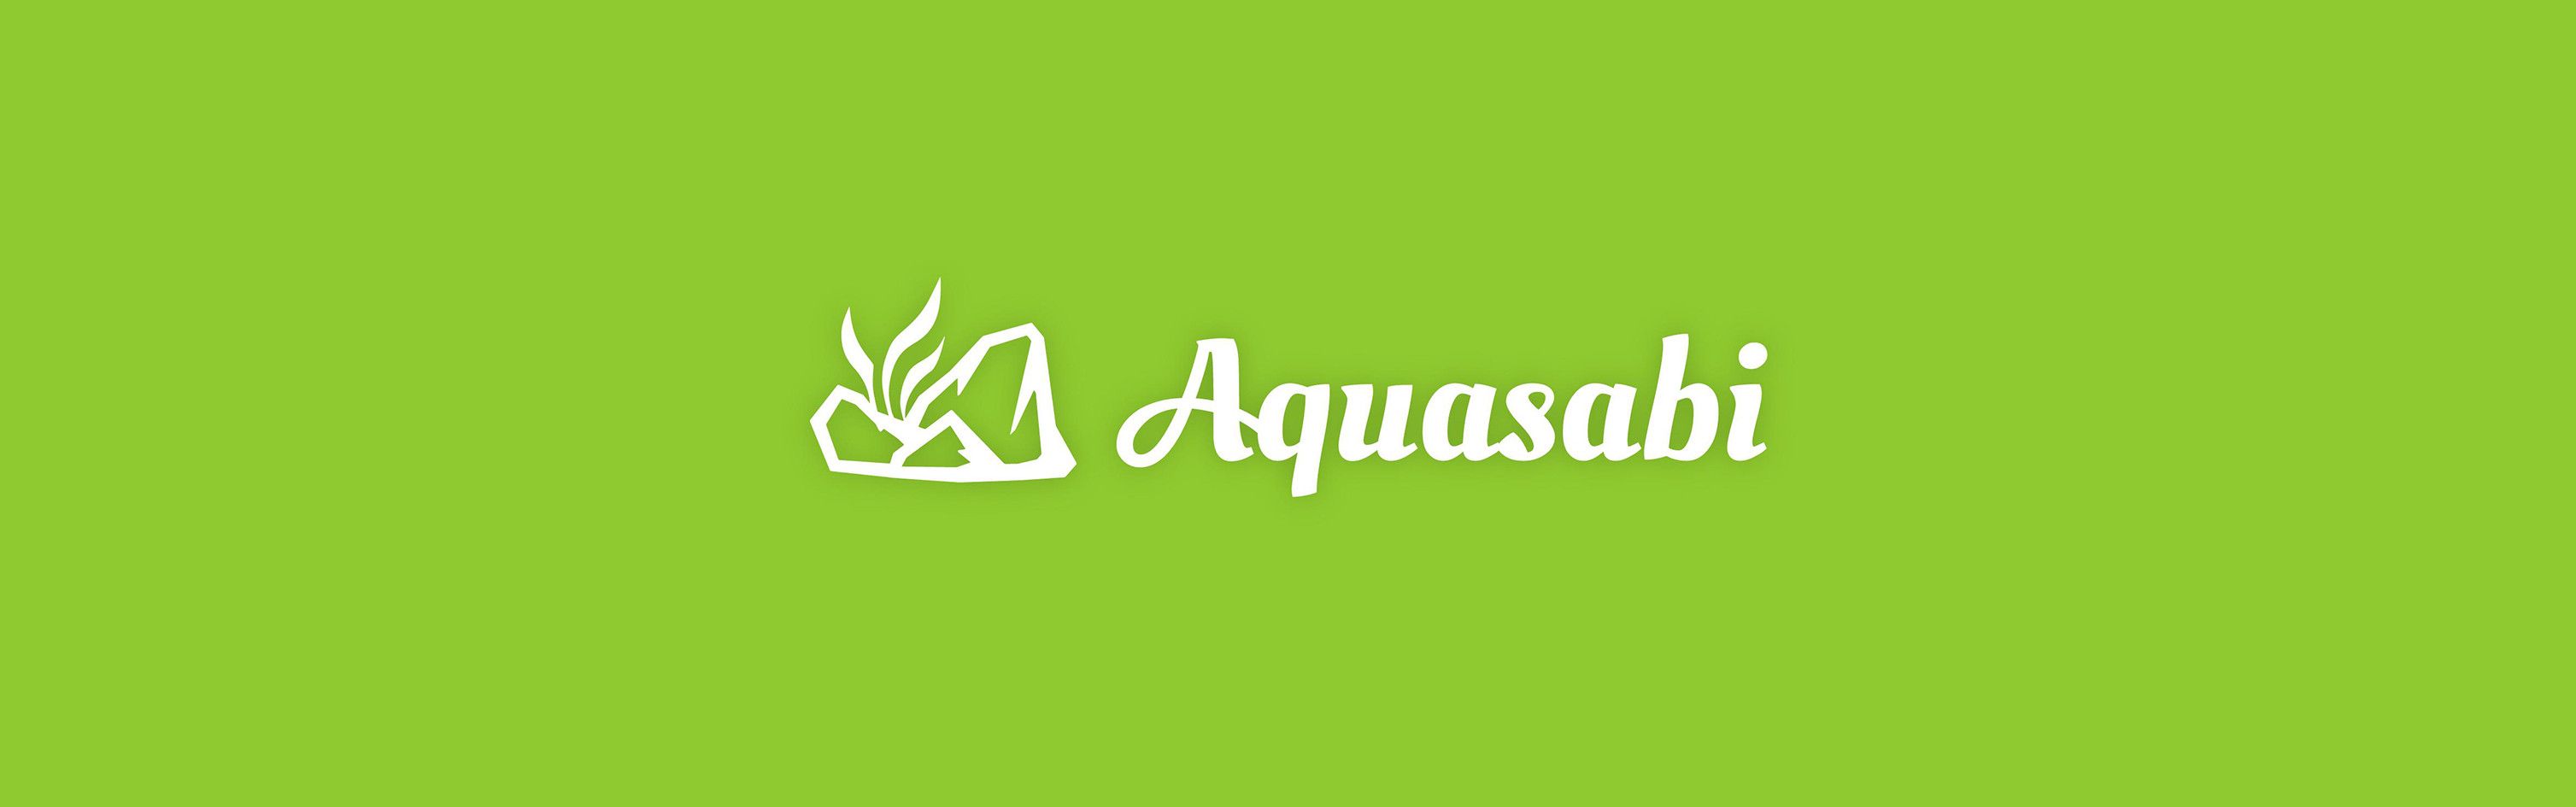 Buy Aquarium Essentials at a great price